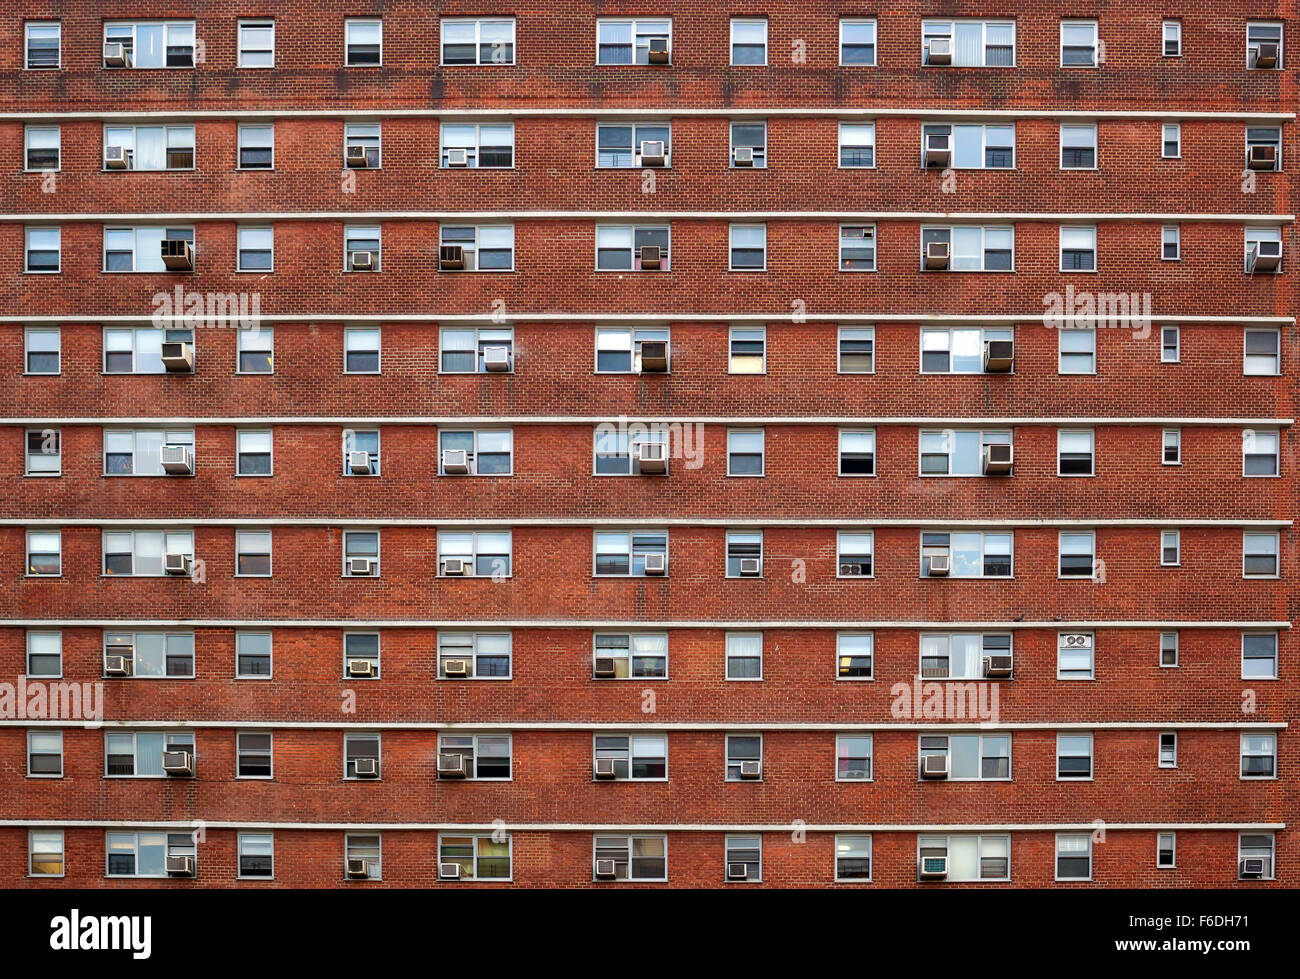 La facciata esterna di un edificio a New York. Molte finestre tutte uguali. Foto Stock